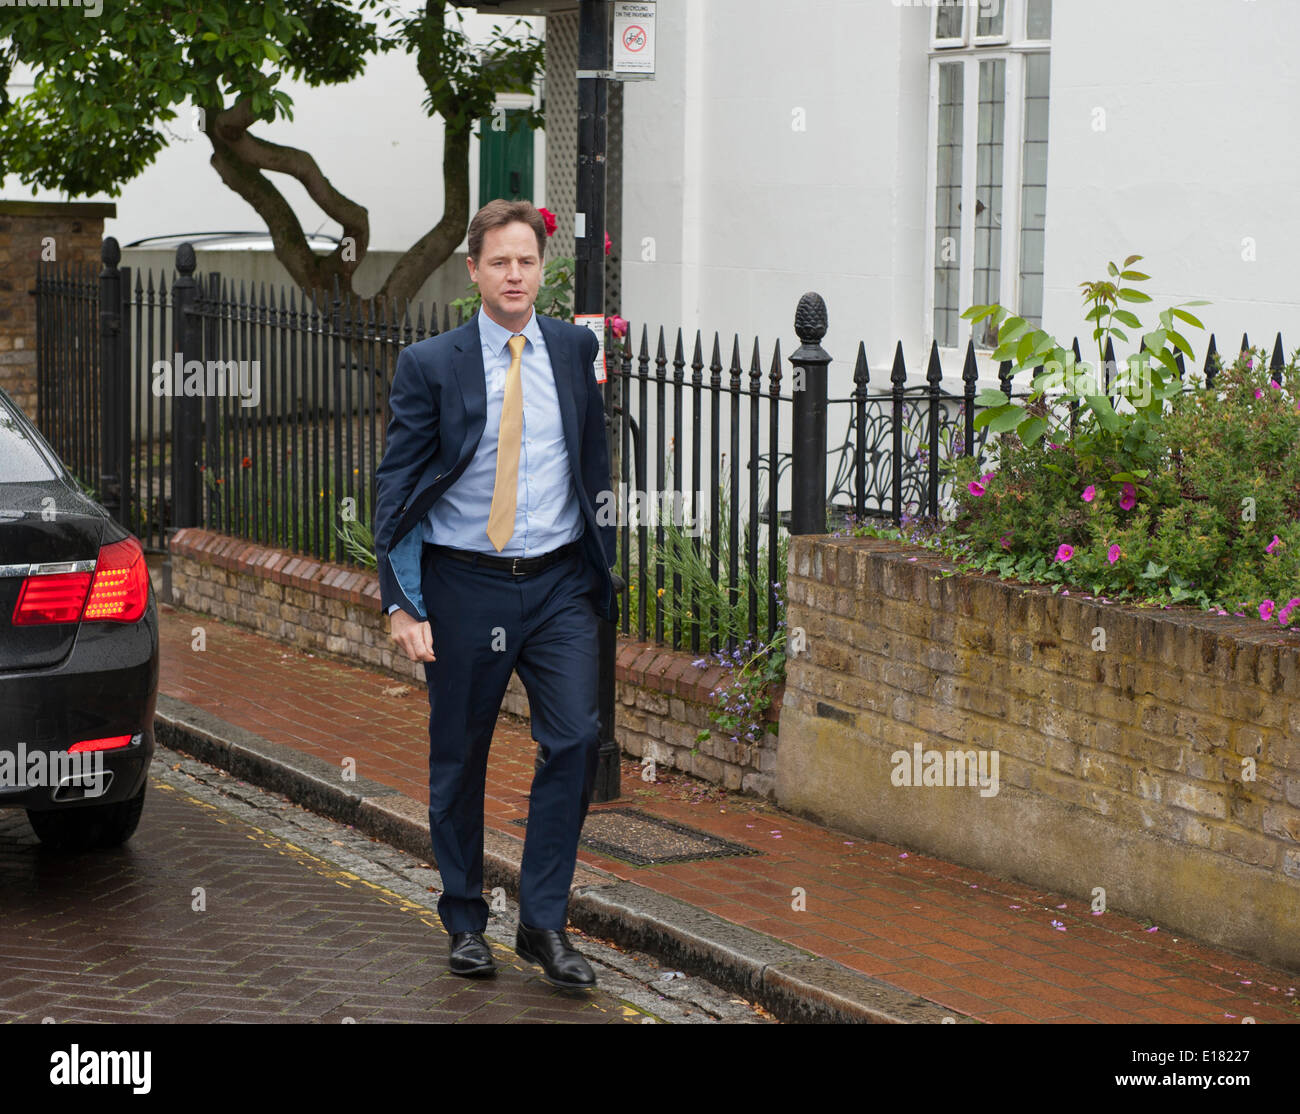 Nick Clegg stellvertretender Ministerpräsident nach Hause kommt nach Euro Wahlniederlage London Uk 26. Mai 2014 Credit: Prixnews/Alamy Live News Stockfoto